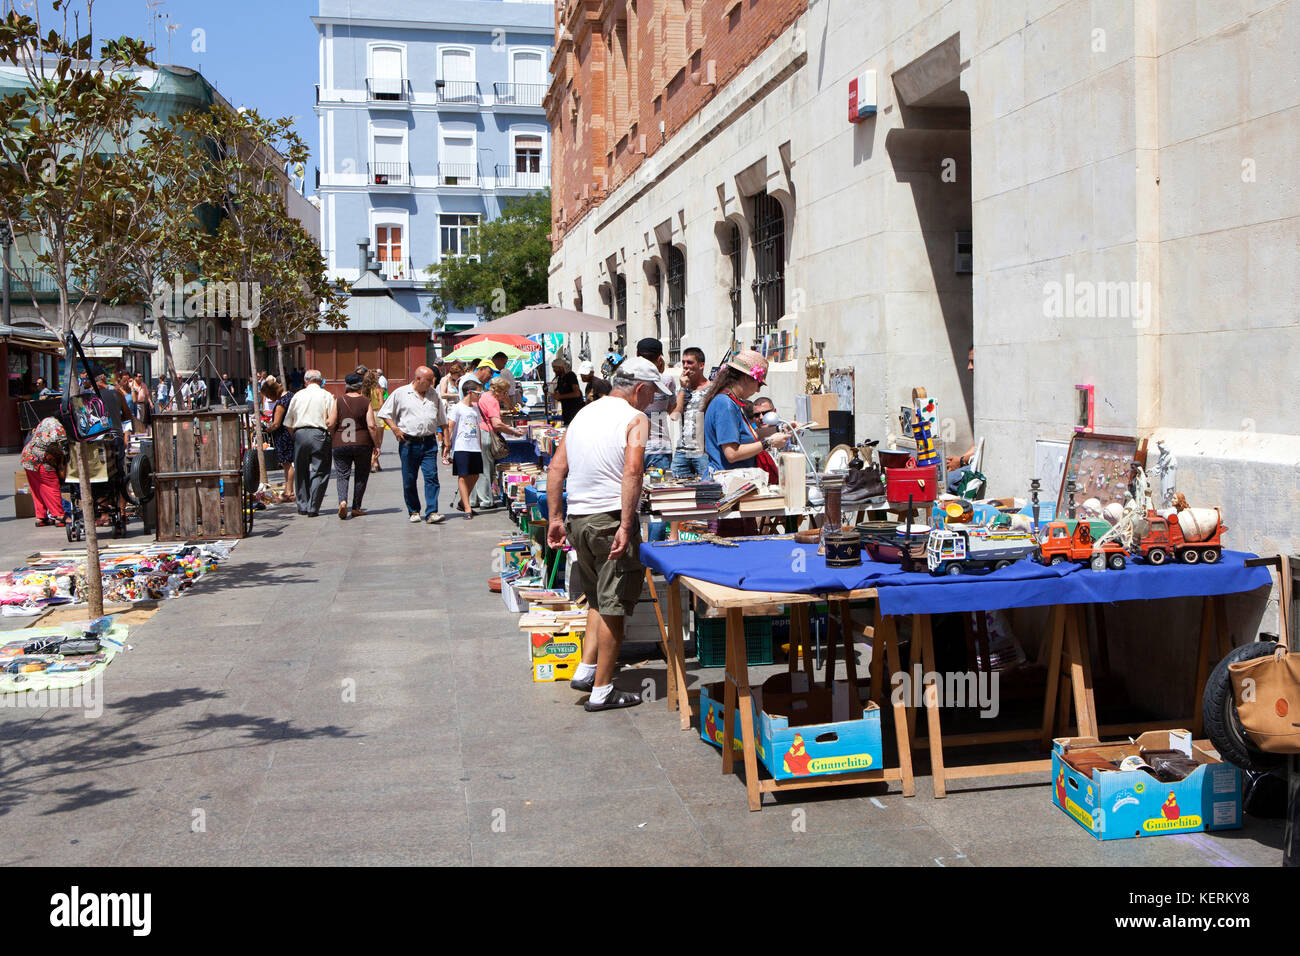 Car Boot Sale et Market street traders à Cadix une ancienne ville portuaire  dans le sud-ouest de l'Espagne Photo Stock - Alamy